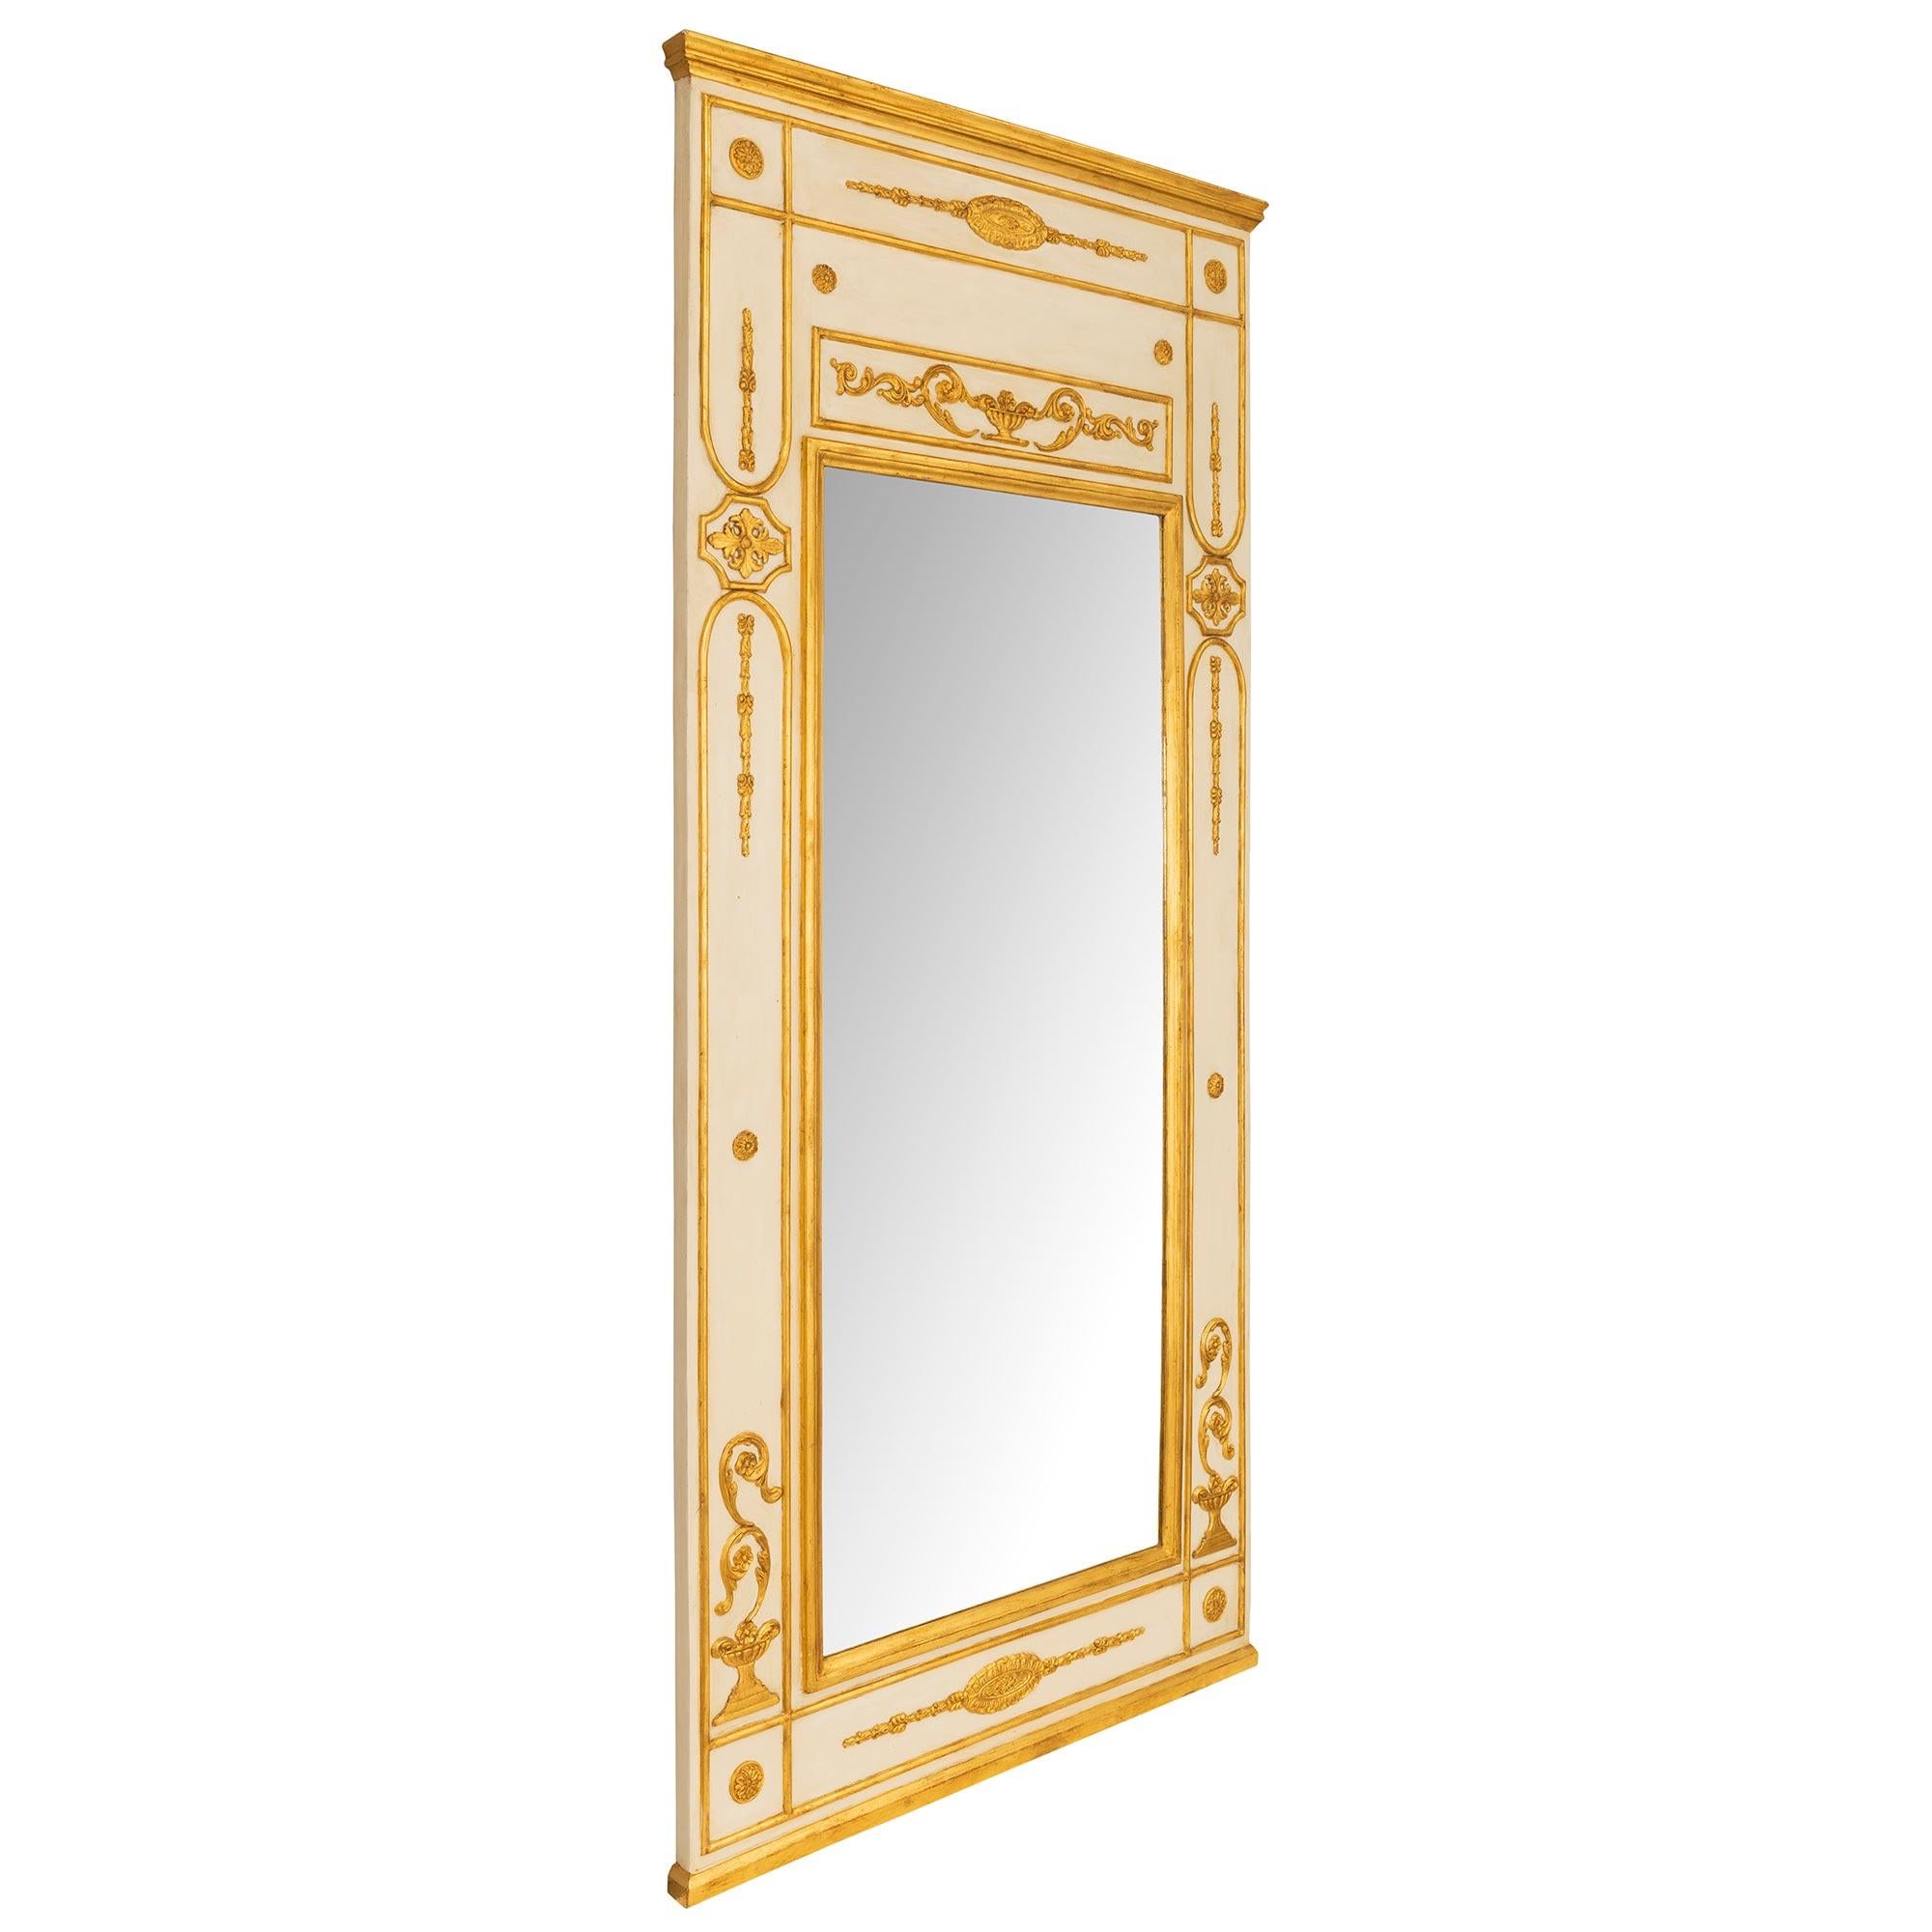 Ein beeindruckendes und sehr elegantes Paar italienischer Trumeau-Spiegel aus patiniertem und vergoldetem Holz des 18. Jahrhunderts. Jeder großformatige Spiegel behält seine ursprüngliche Spiegelplatte, die von einem feinen, gesprenkelten